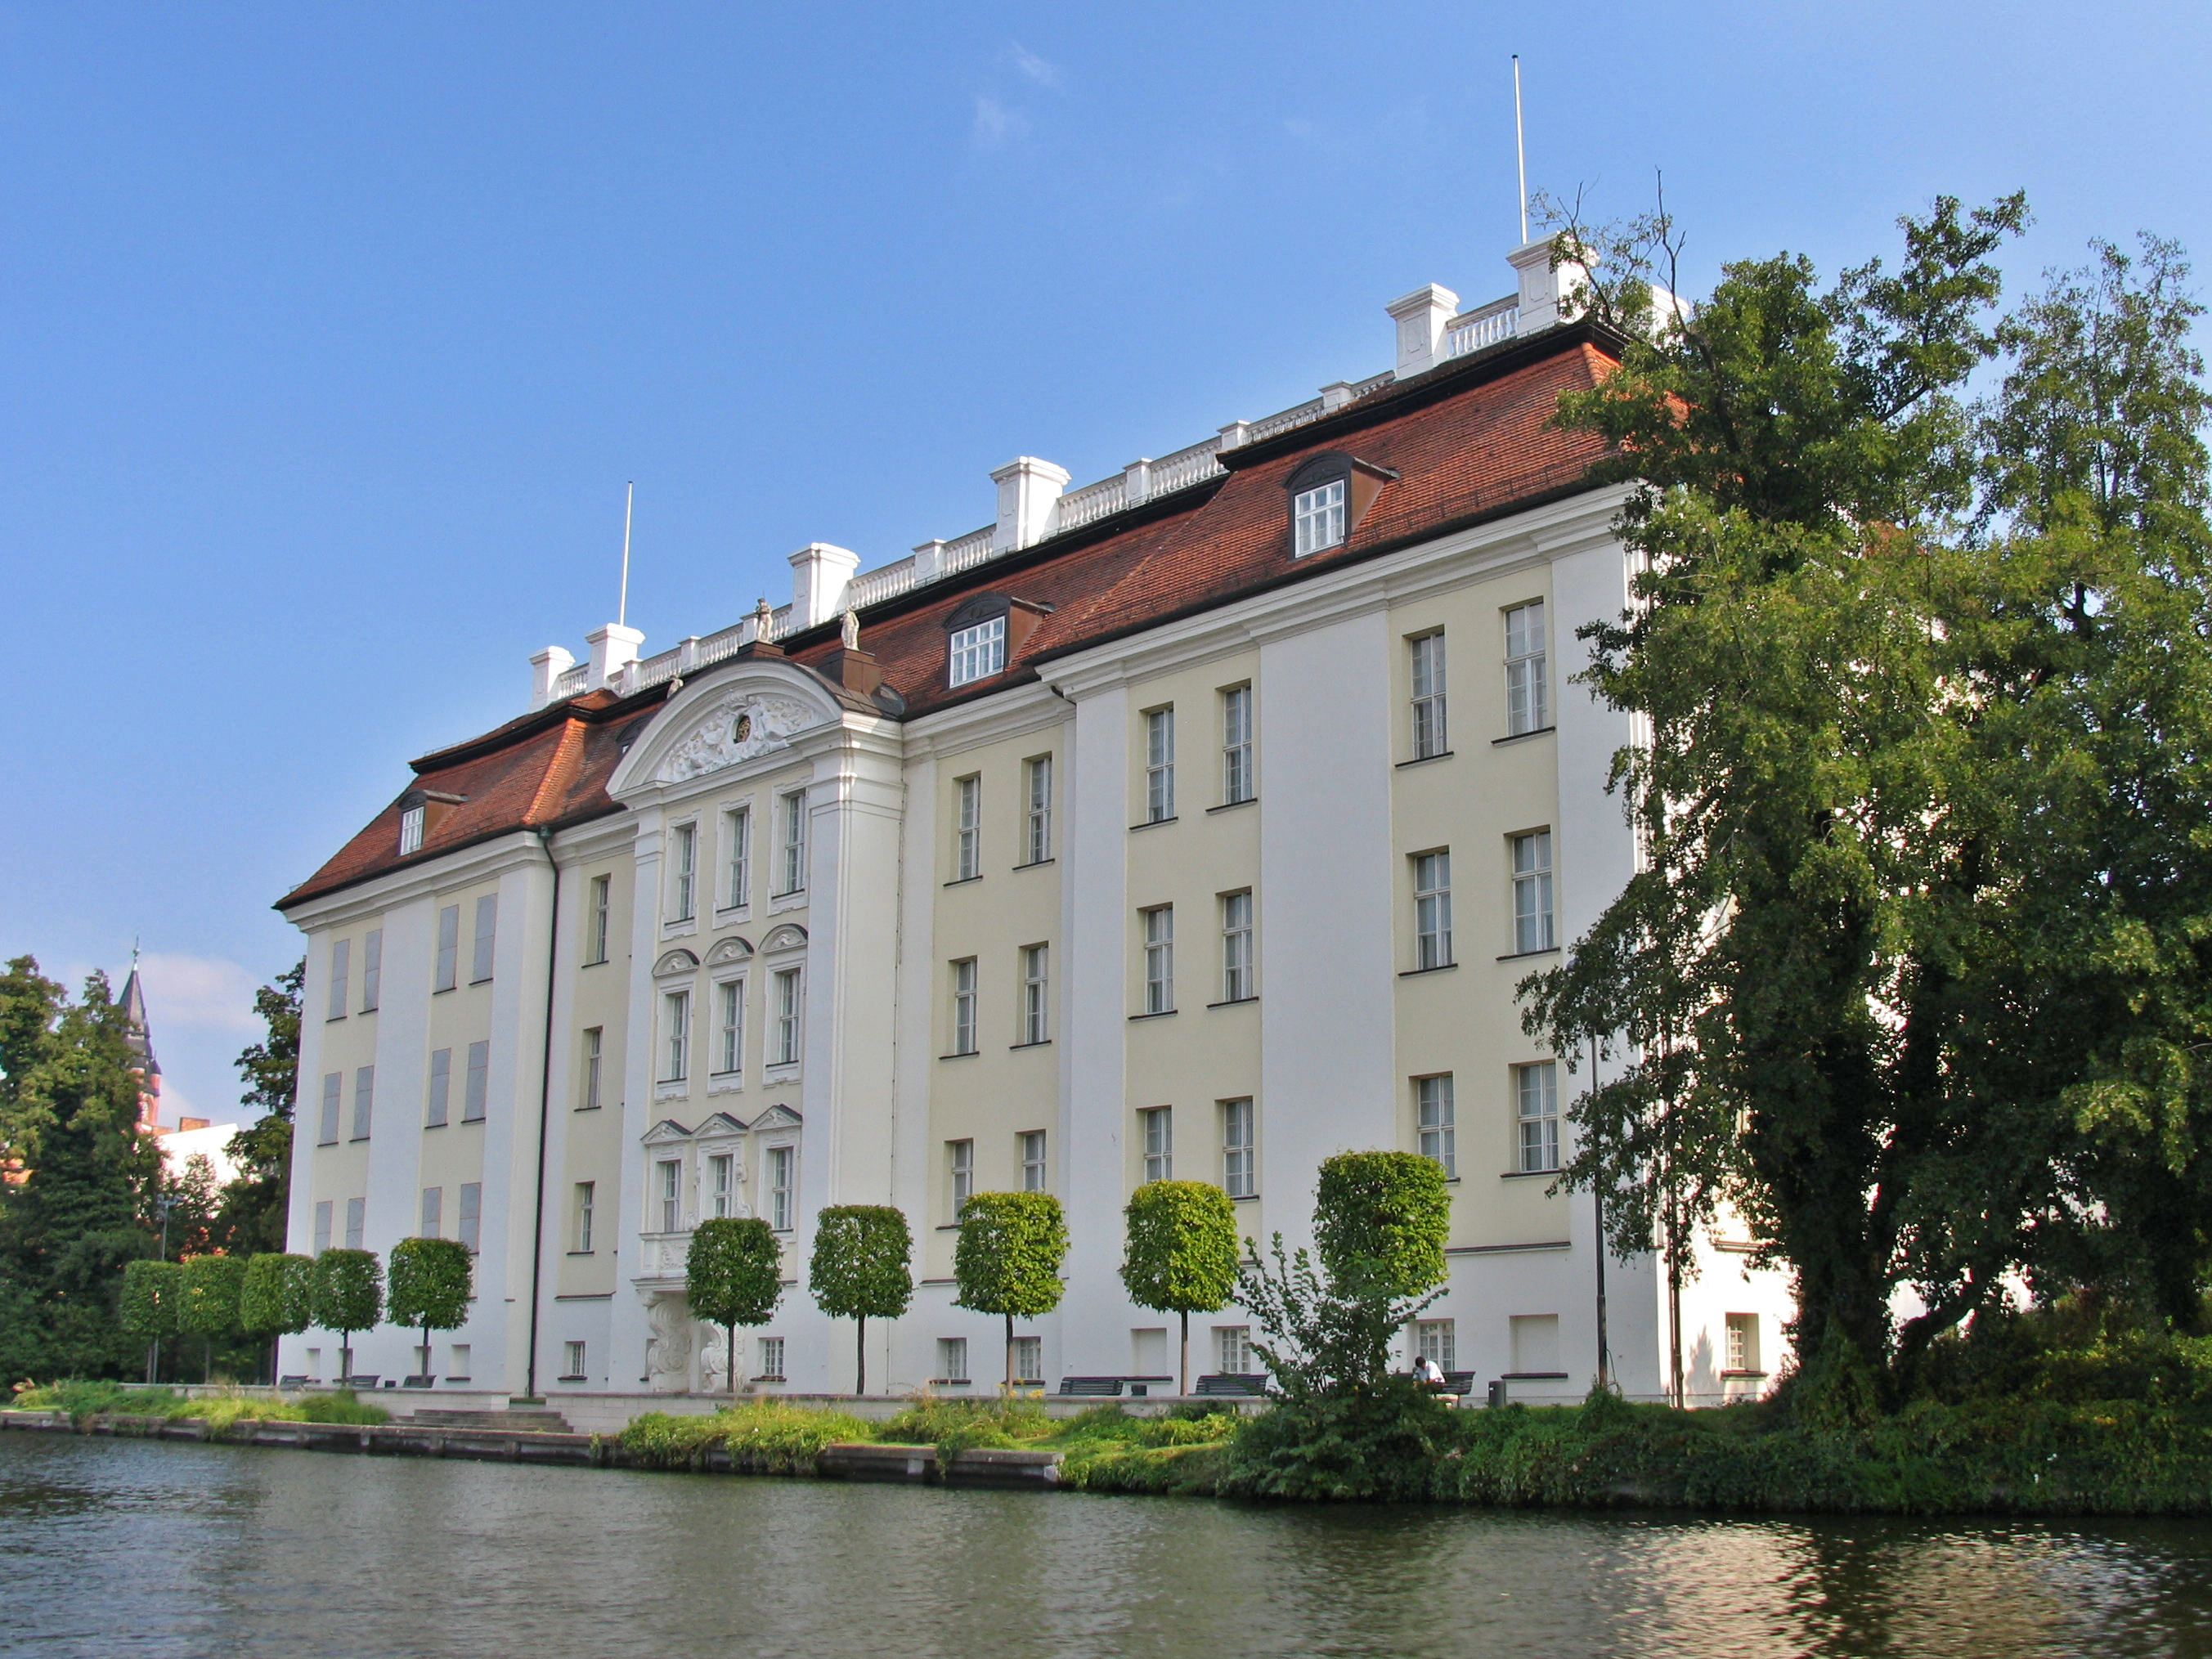 Schloss Köpenick von der Wasserseite